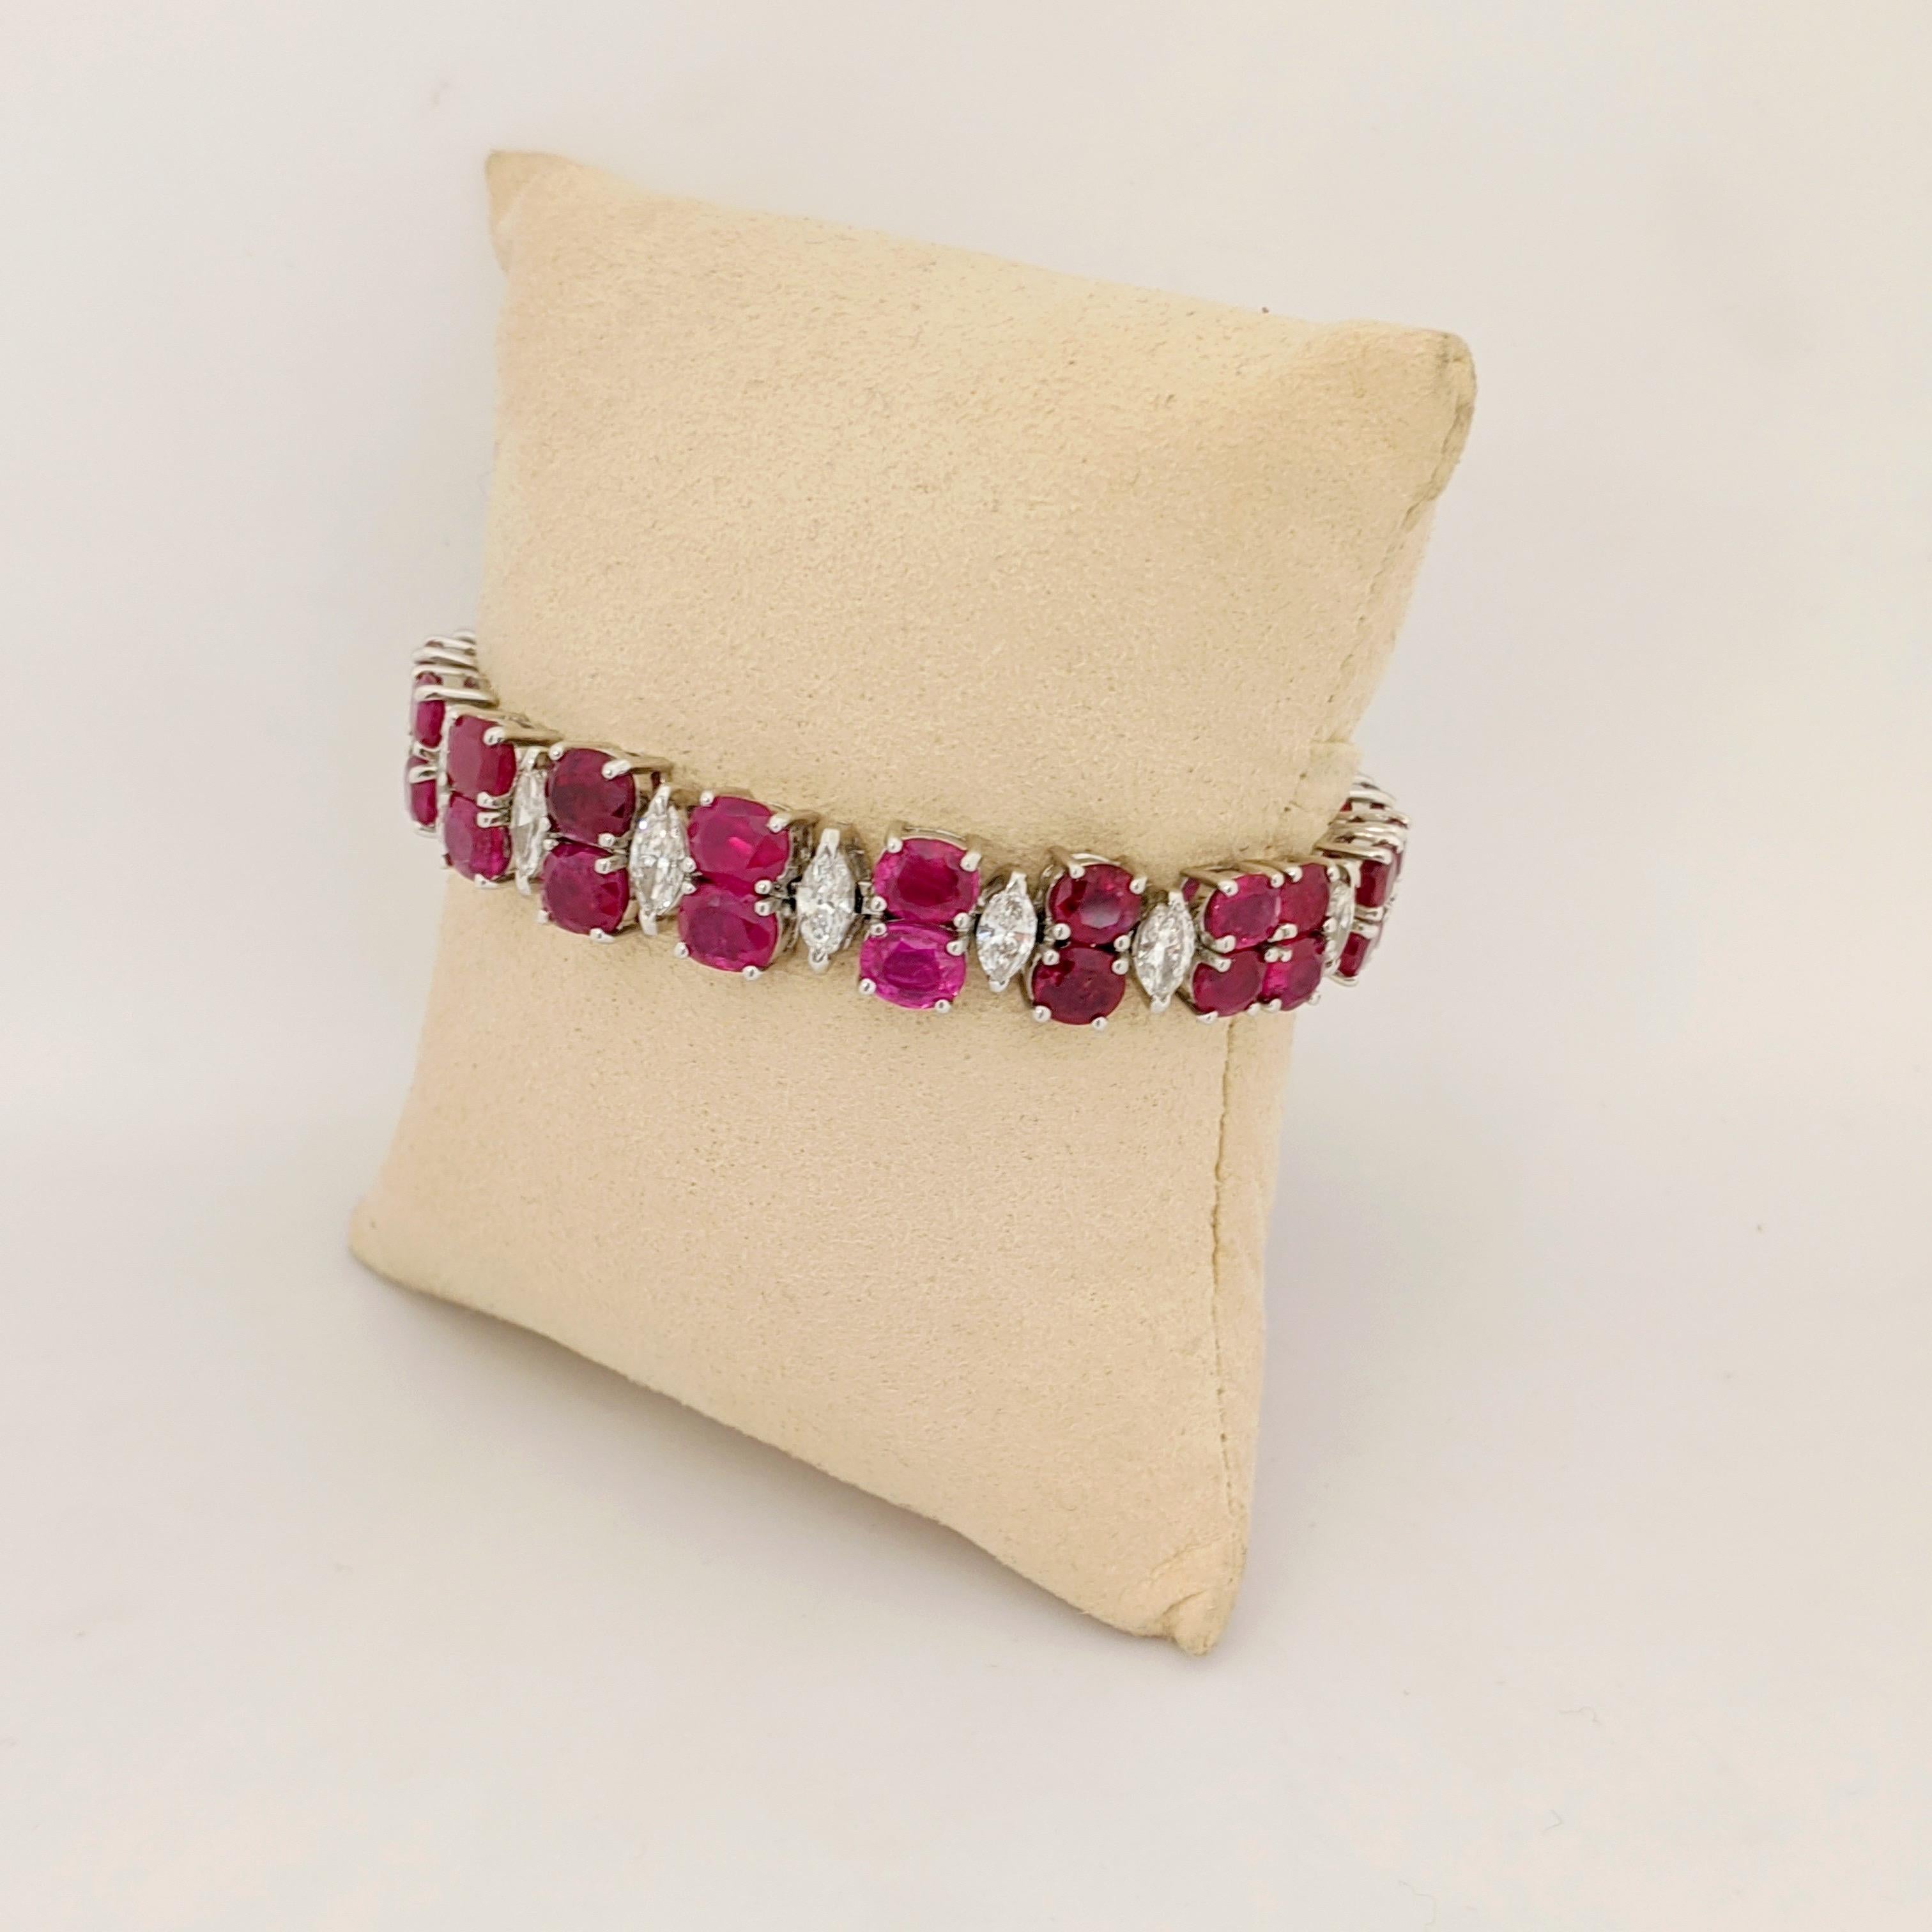 UN IMPORTANT BRACELET DE RUBIS ET DE DIAMANTS.
 Le bracelet gradué est conçu avec  deux rangées de rubis birmans ovales avec des connexions simples de diamants Marquis. Les magnifiques pierres sont serties dans une monture de bracelet en platine